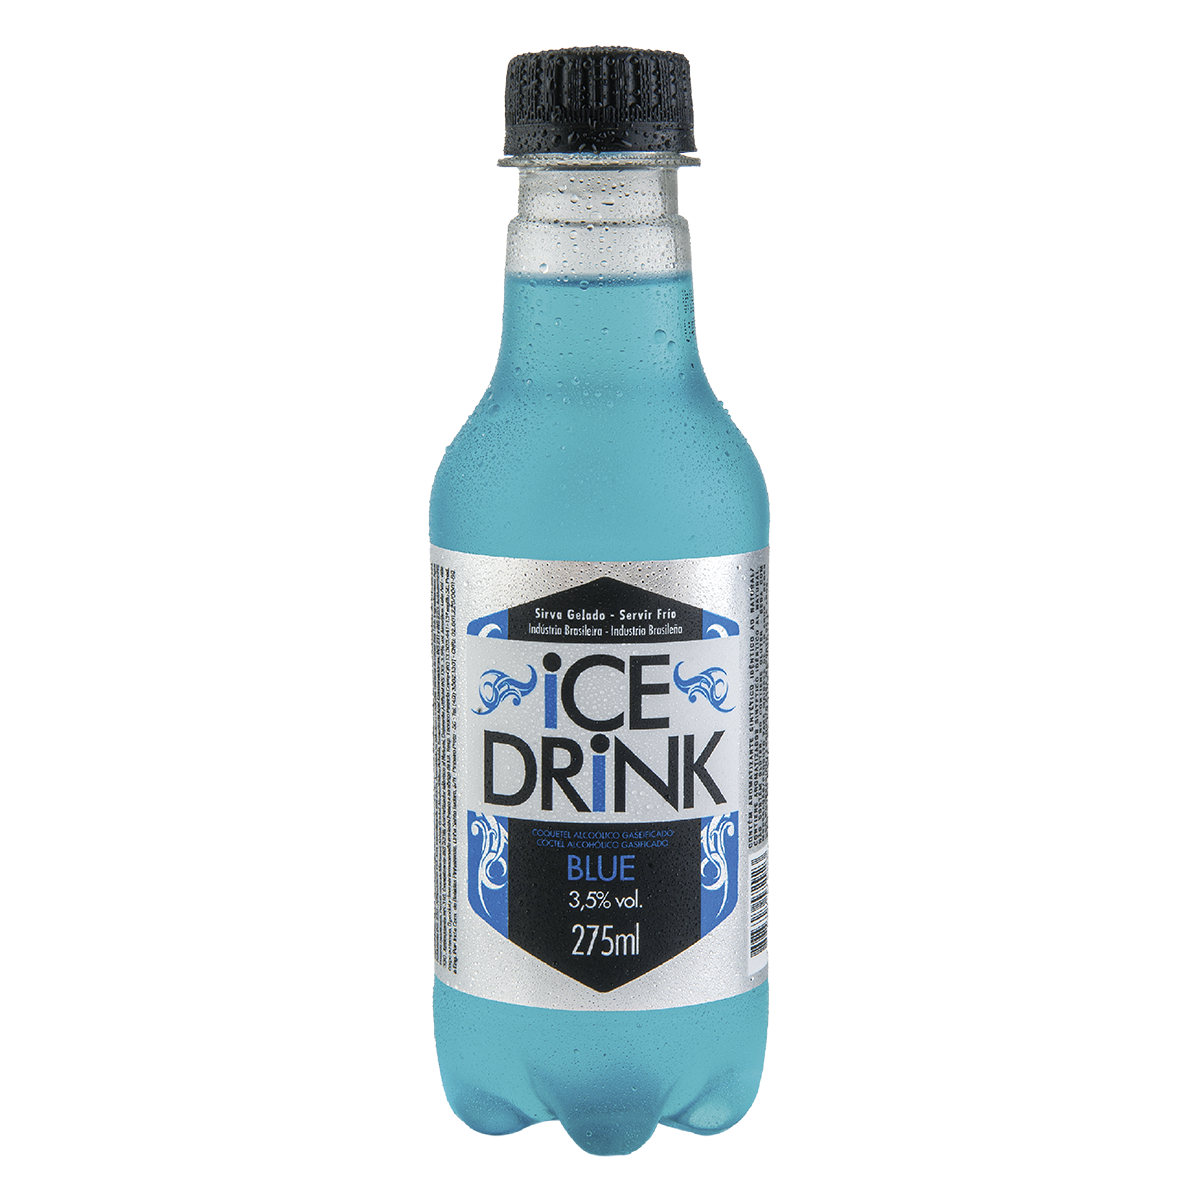 7898307572923 - COQ ICE DRINK 275ML BLUE PET